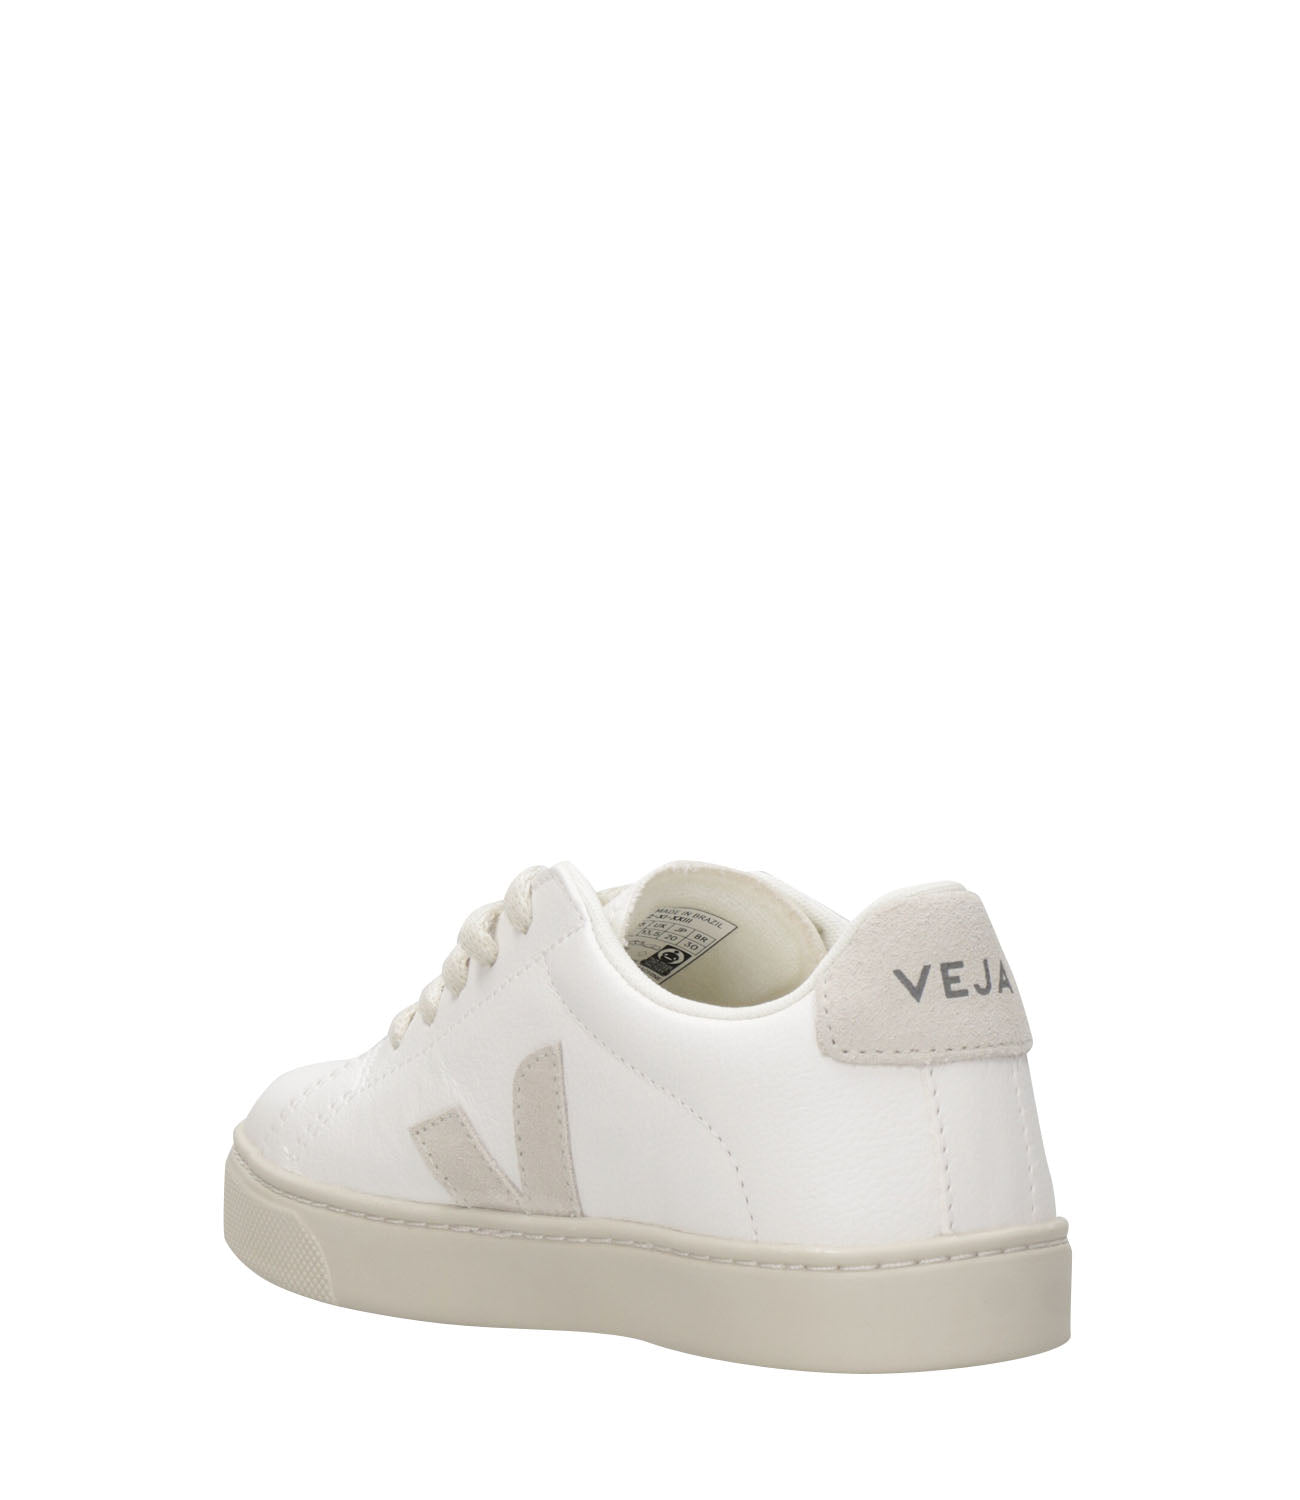 Veja Kids | Sneakers Esplar Laces Bianco e Naturale